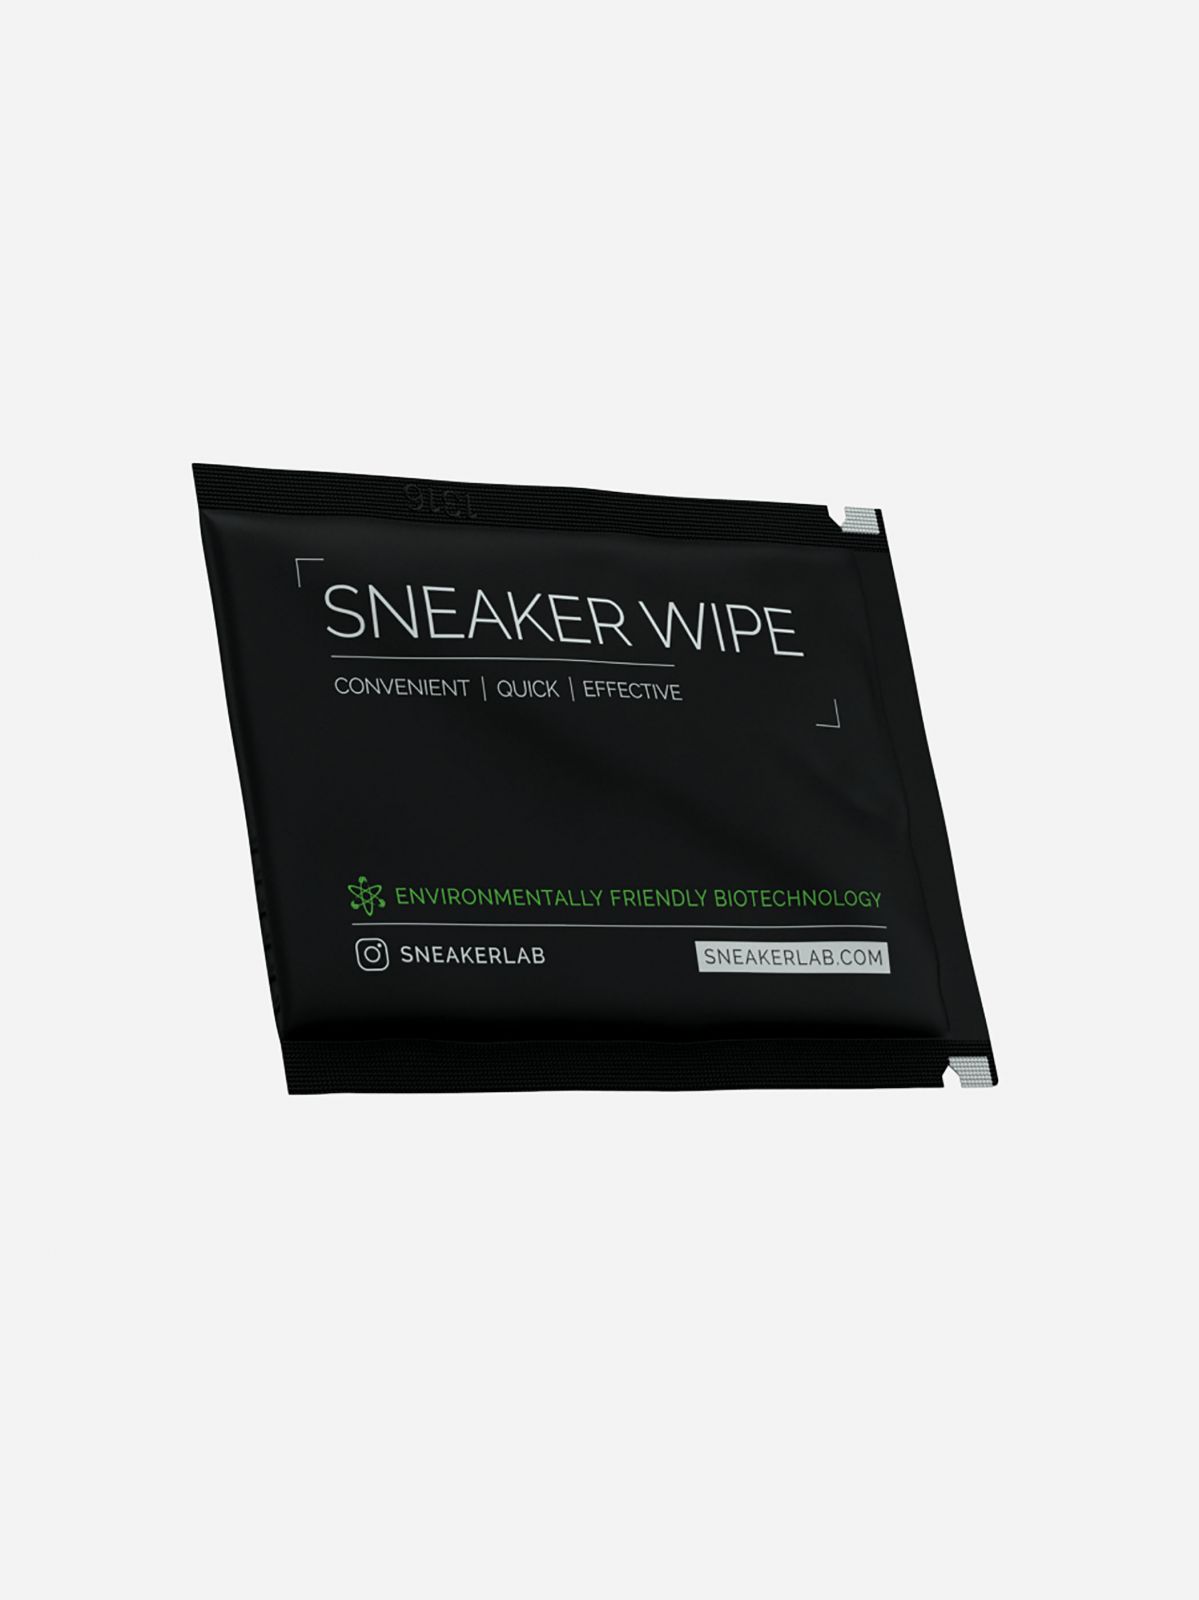  מארז 12 מגבונים לנעליים Sneakers Wipes של SNEAKER LAB